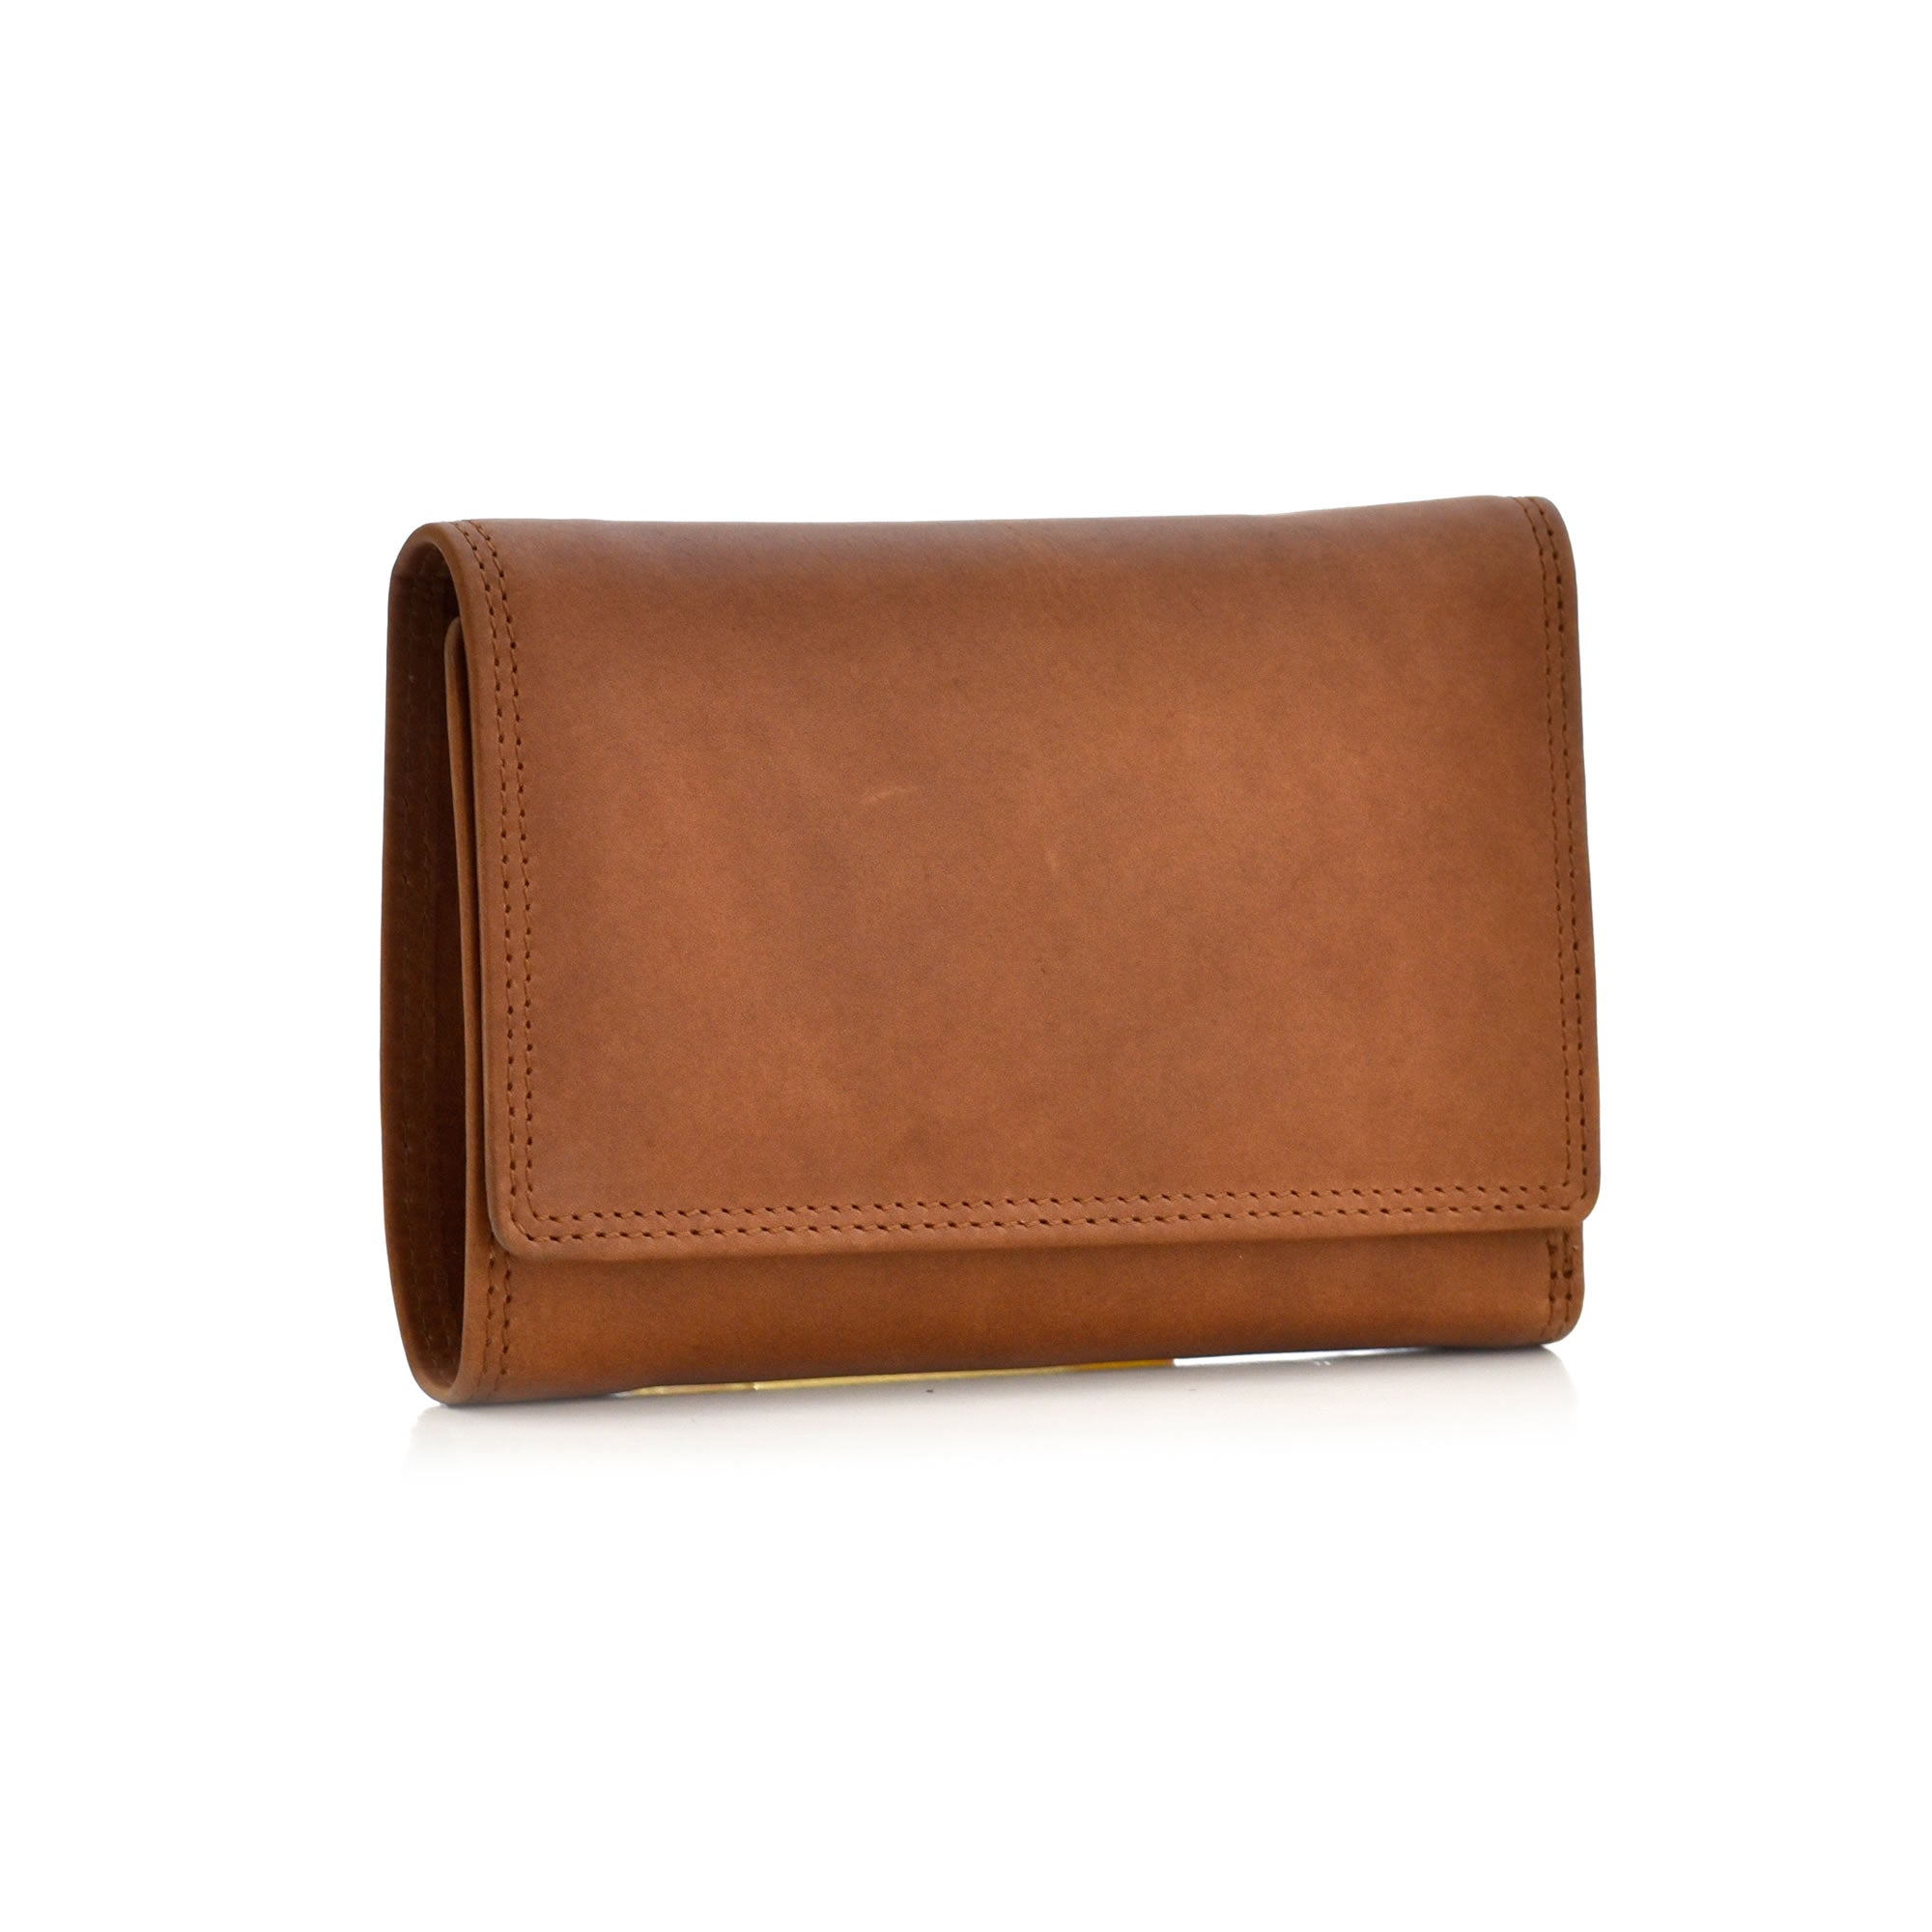 High Quality Leather Womens Trifold Wallet Lady Purse Card Holder Clutch  Handbag | eBay